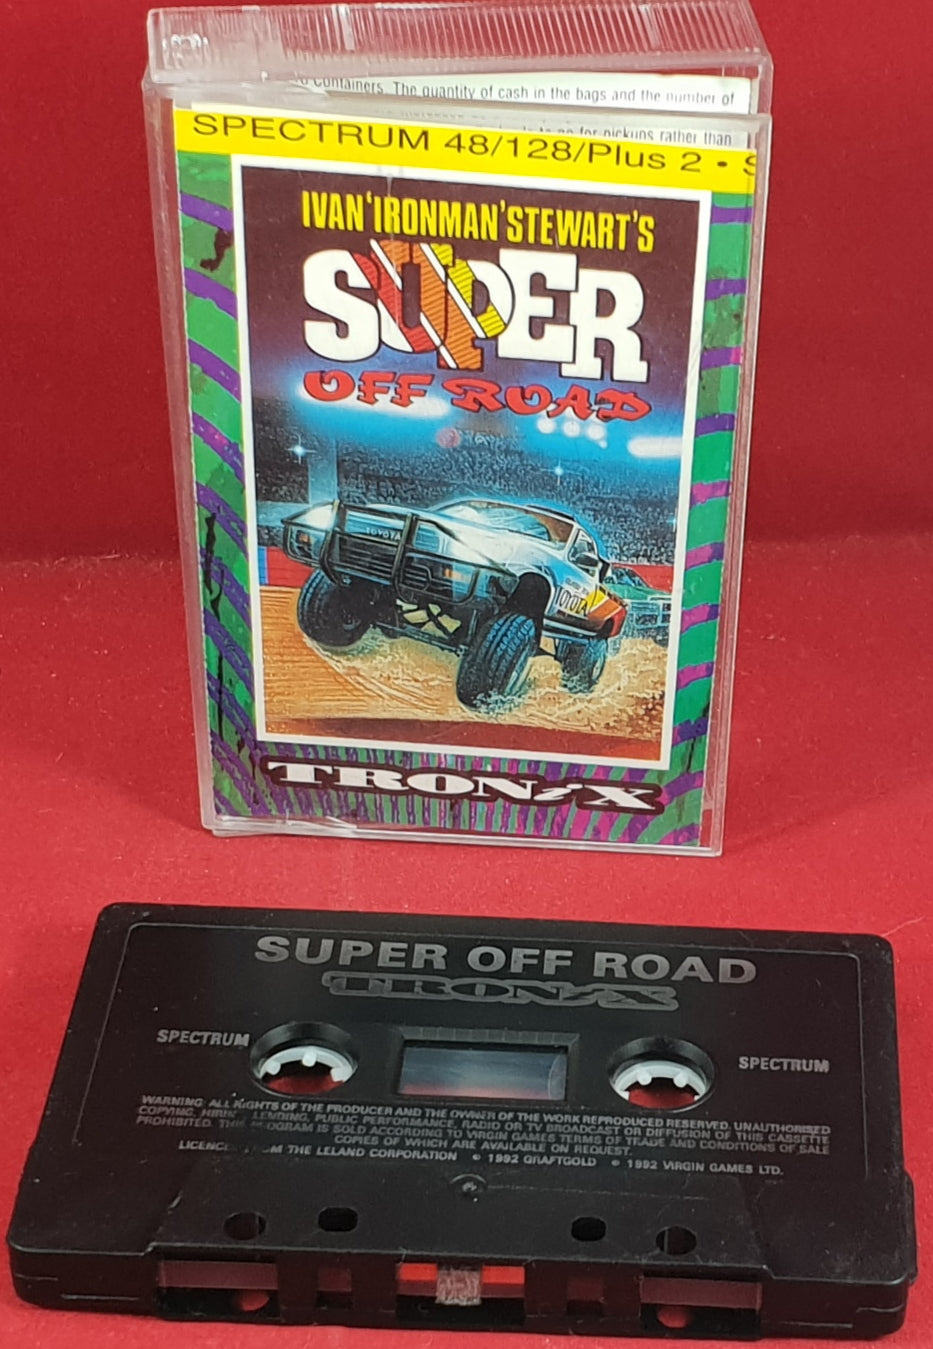 Ivan 'Ironman' Stewarts Super Off Road ZX Spectrum Game